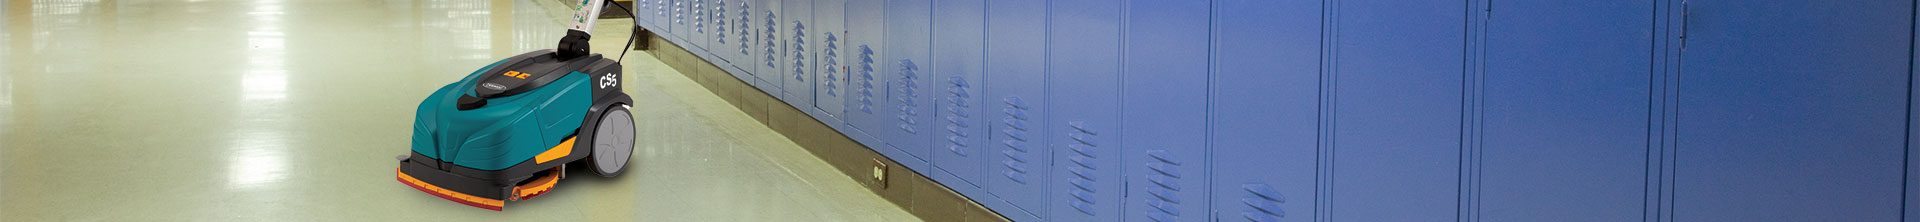 La microlaveuse CS5 de Tennant nettoyant un couloir scolaire